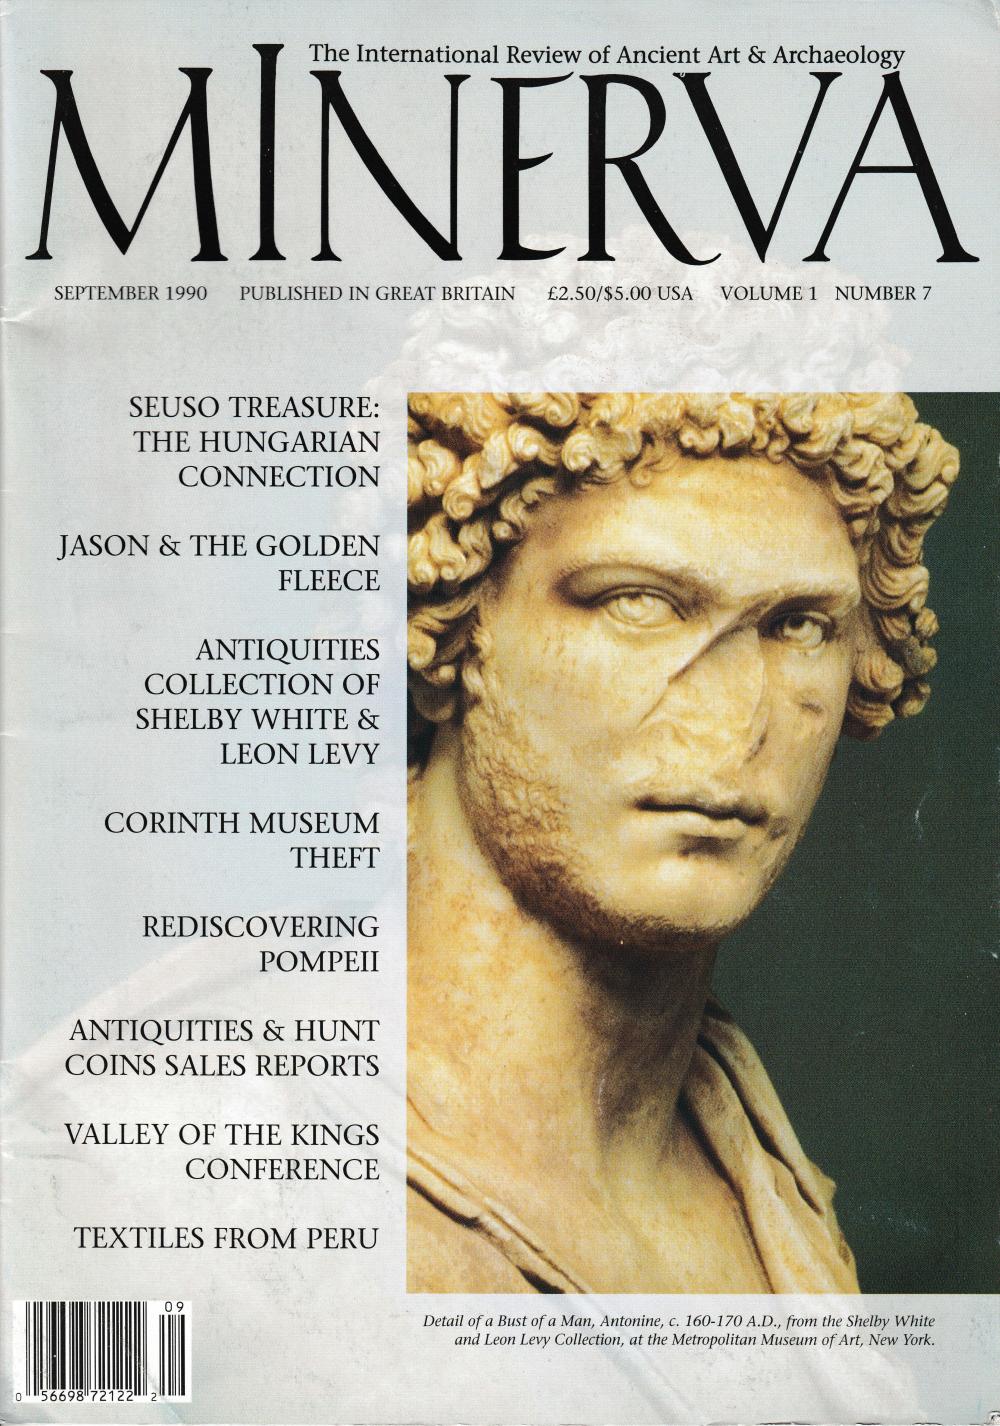 A Minerva című folyóirat 1990 szeptemberi száma